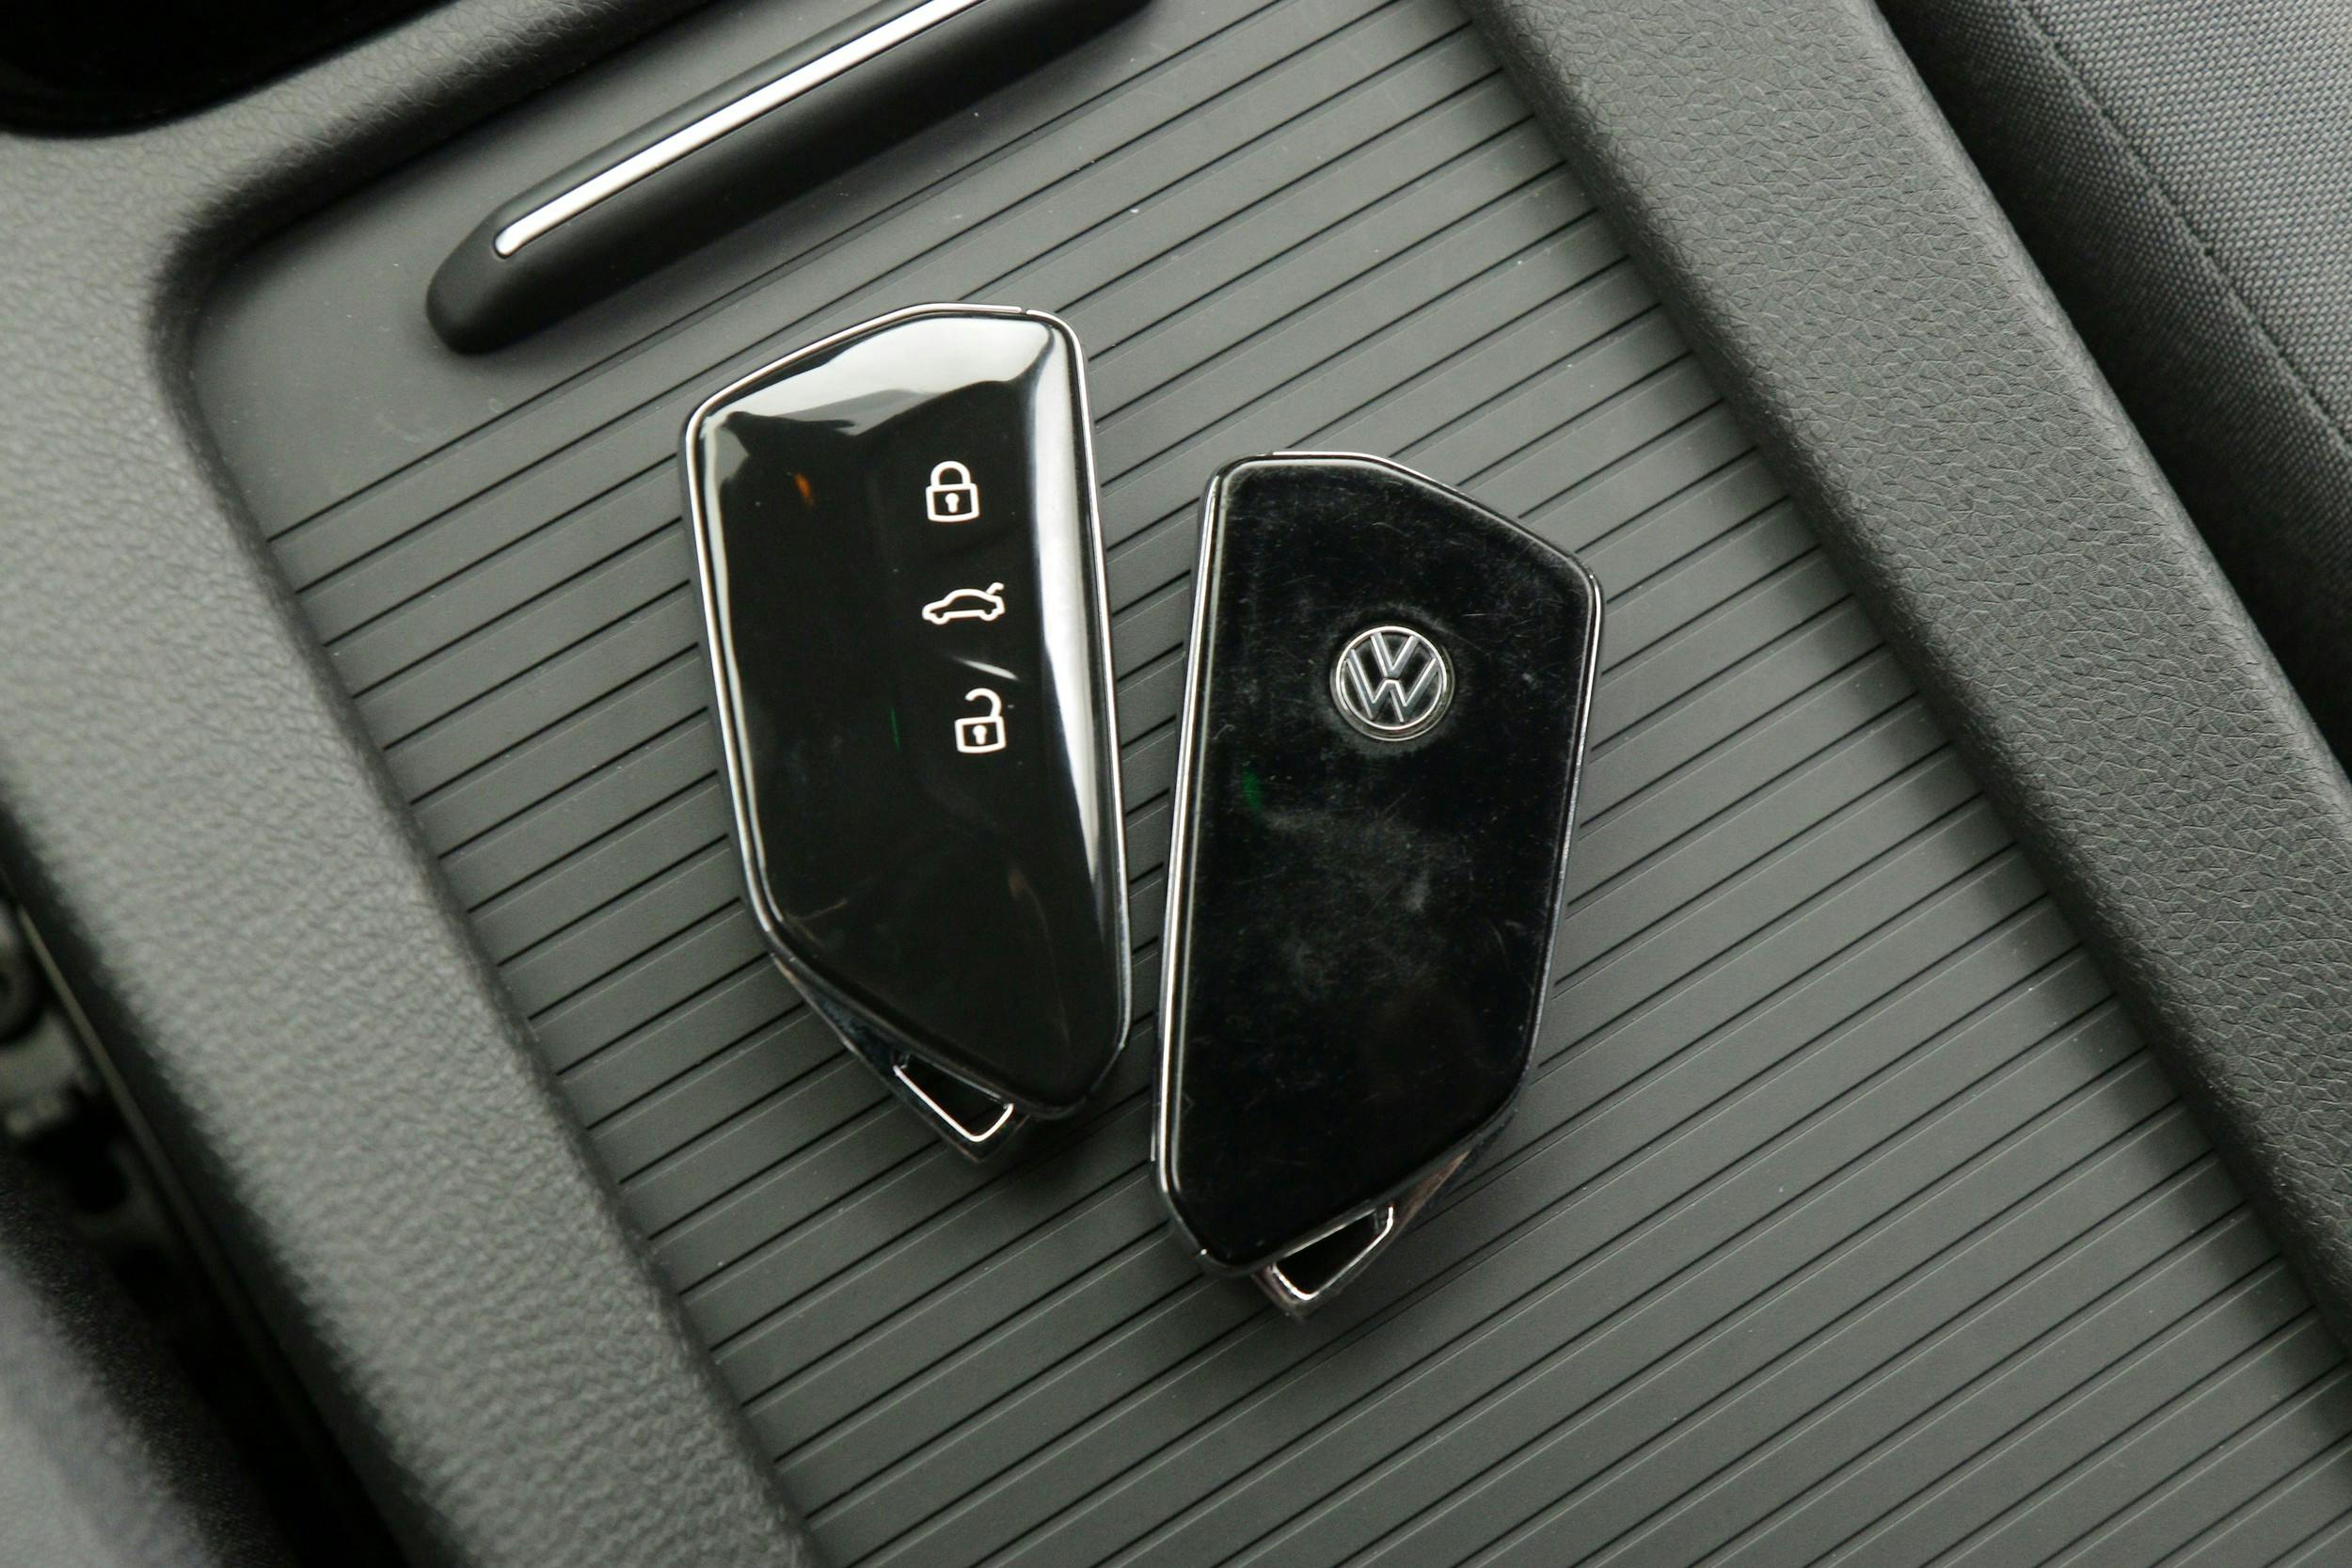 Volkswagen ID.4